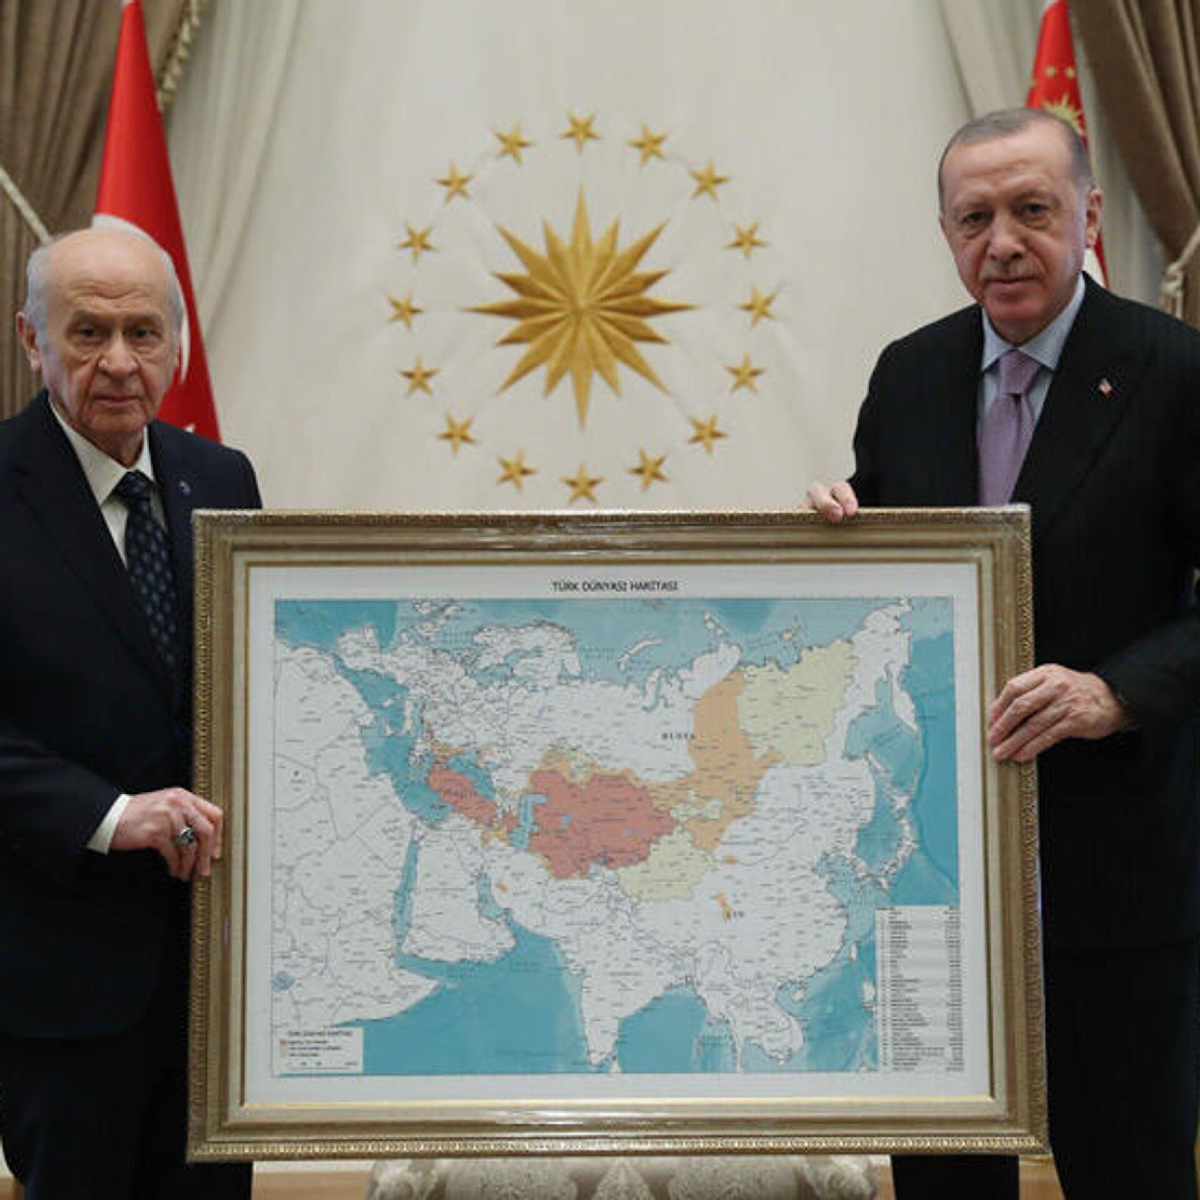 Карту Эрдогану подарил лидер турецких националистов. На ней ряд российских регионов, включая Сибирь, помечен желтым и оранжевым цветами. Каких-либо пояснений по этой карте Анкара не давала